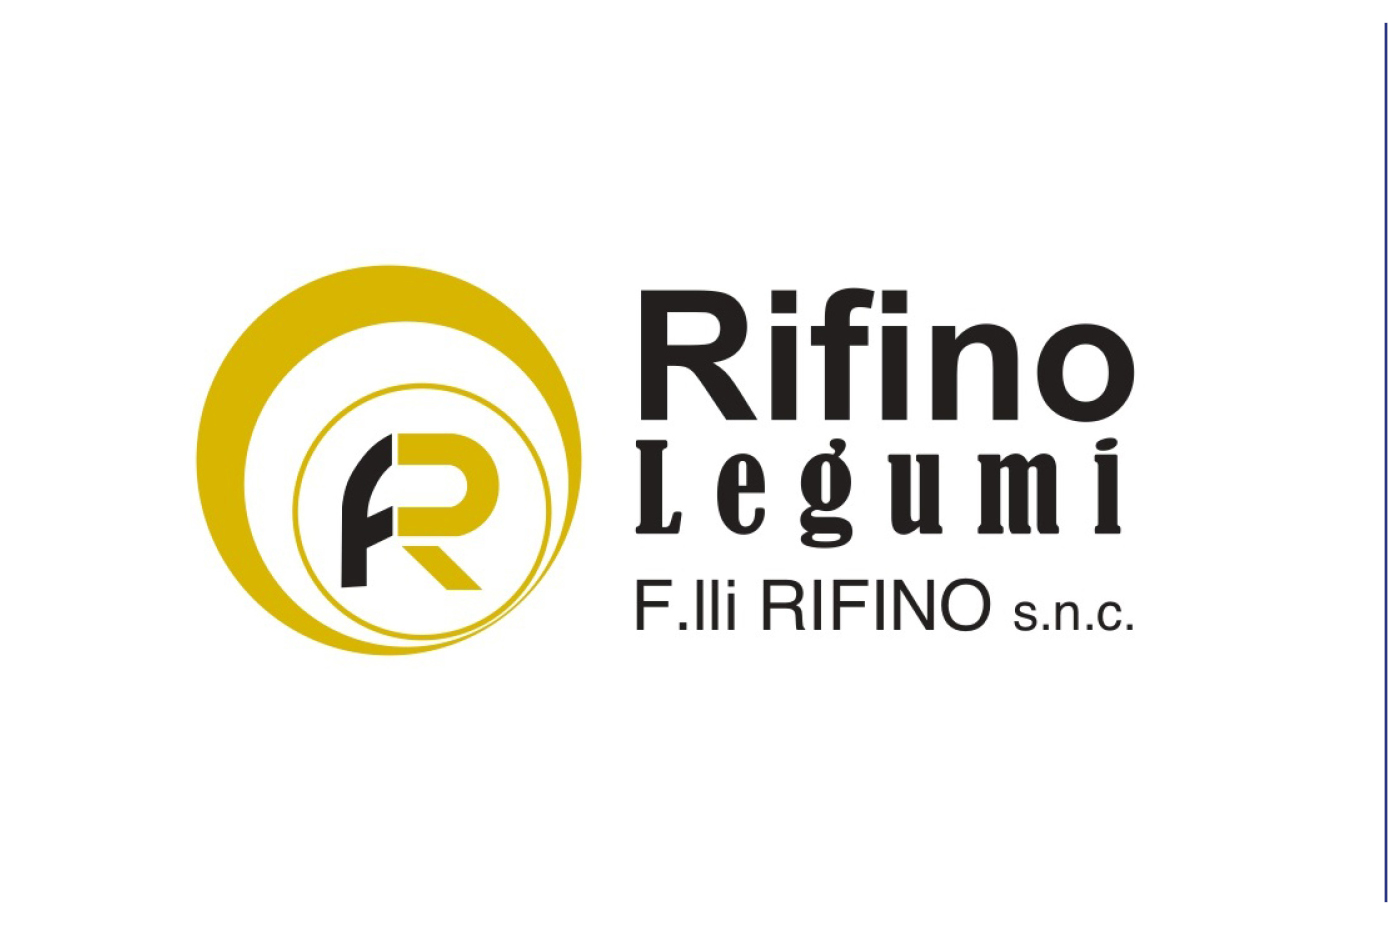 F.lli Rifino snc